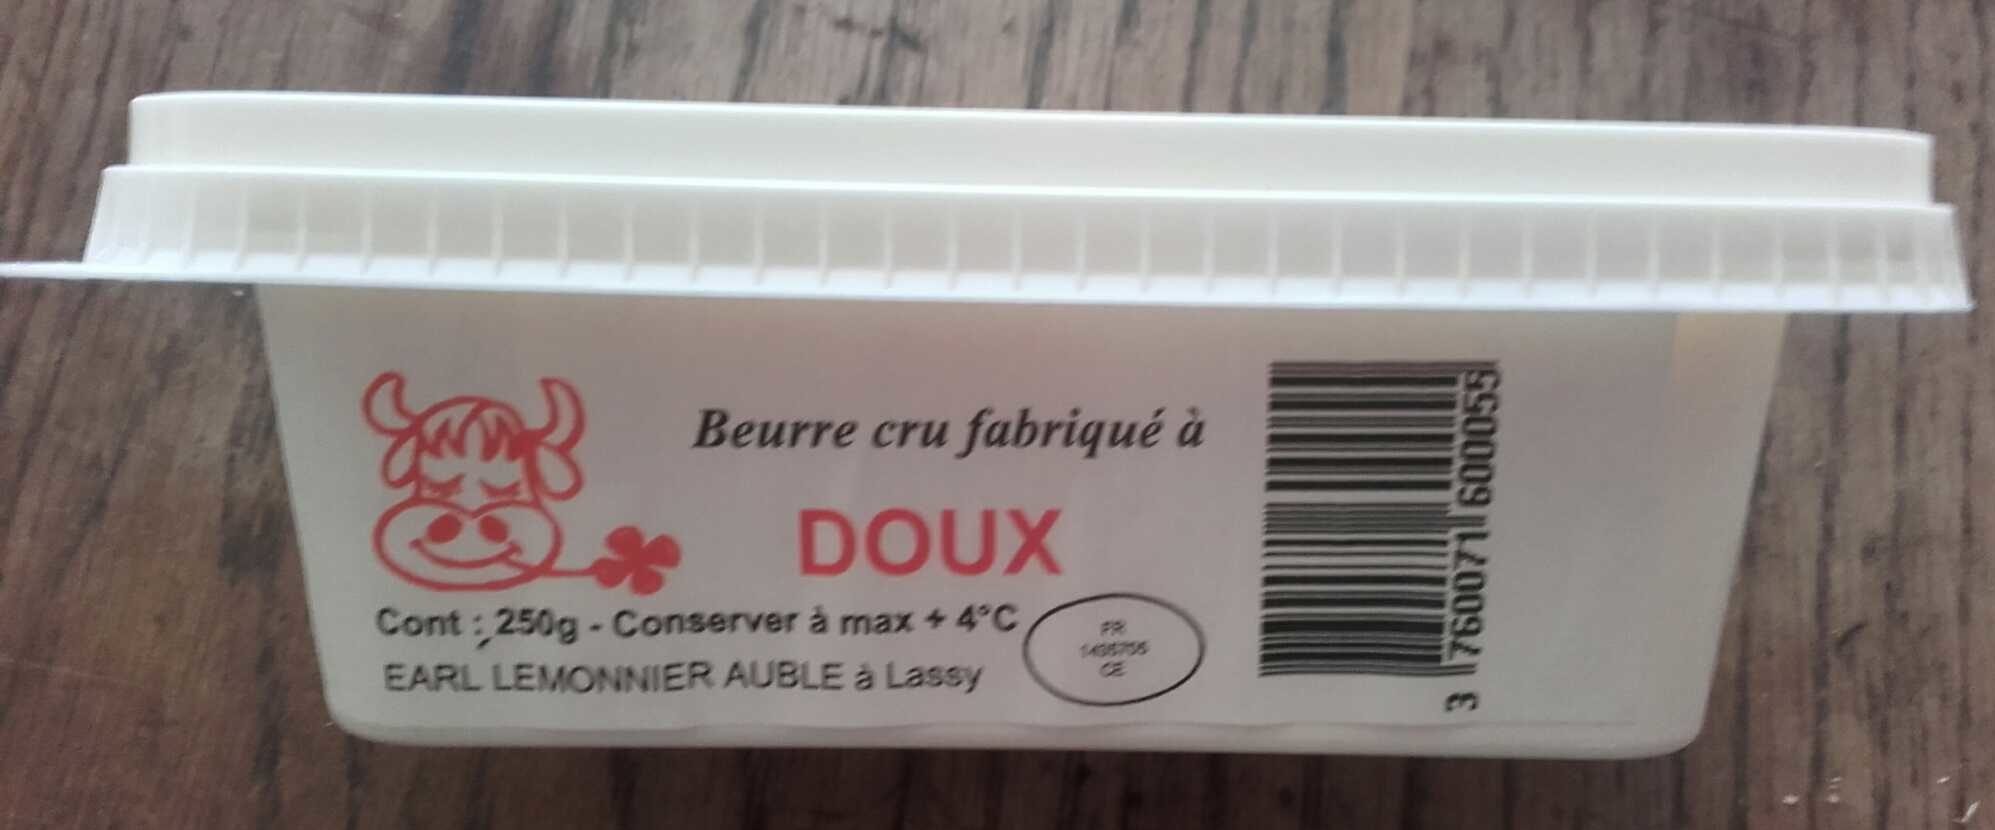 Beurre cru doux - Producto - fr